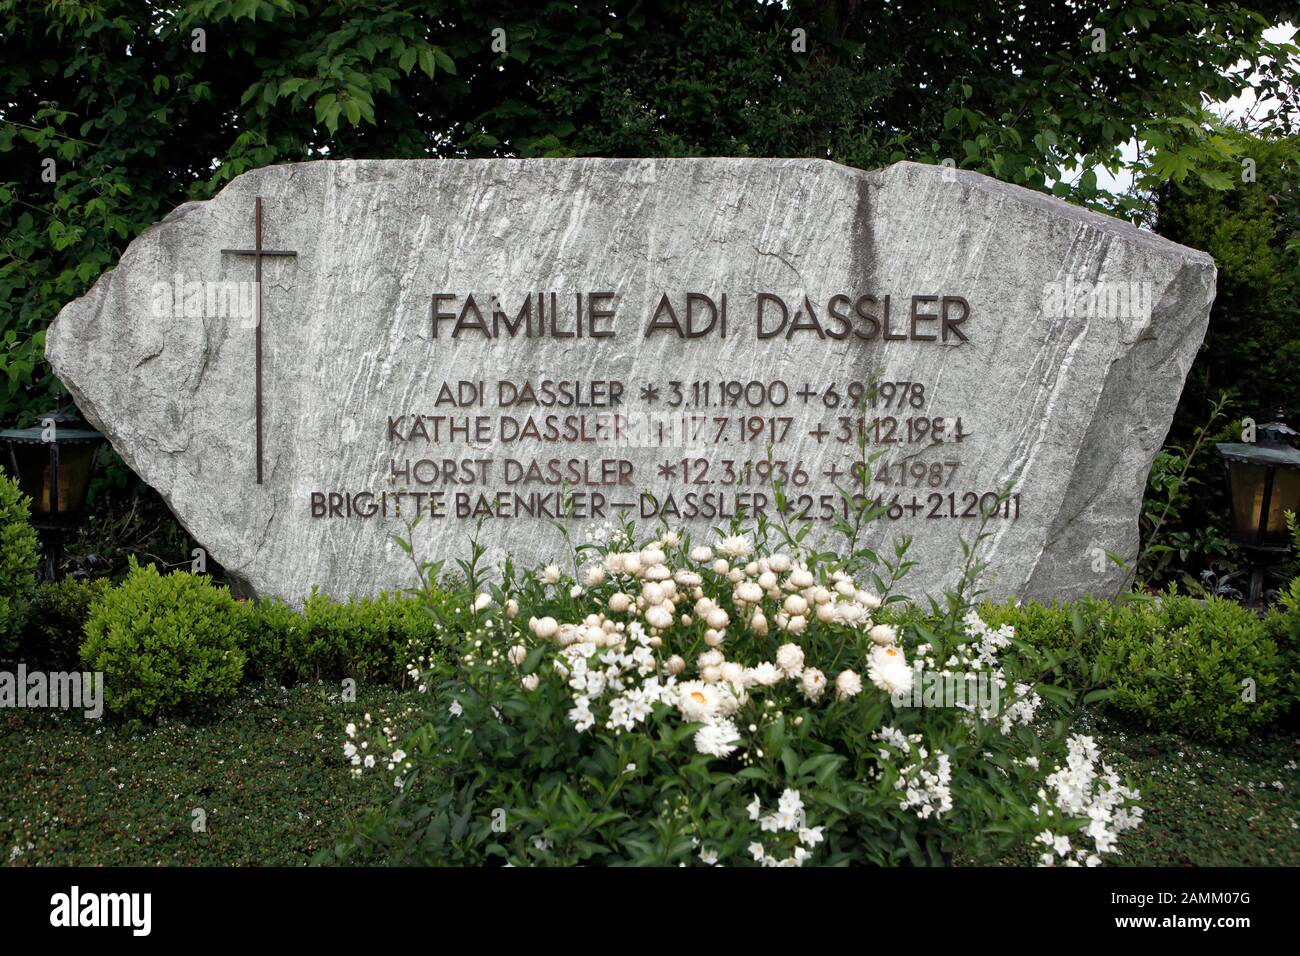 Das Familiengrabmal des Adidas-Gründers Adi Dassler auf dem Friedhof in  Herzogenaurach. [Automatisierte Übersetzung] Stockfotografie - Alamy